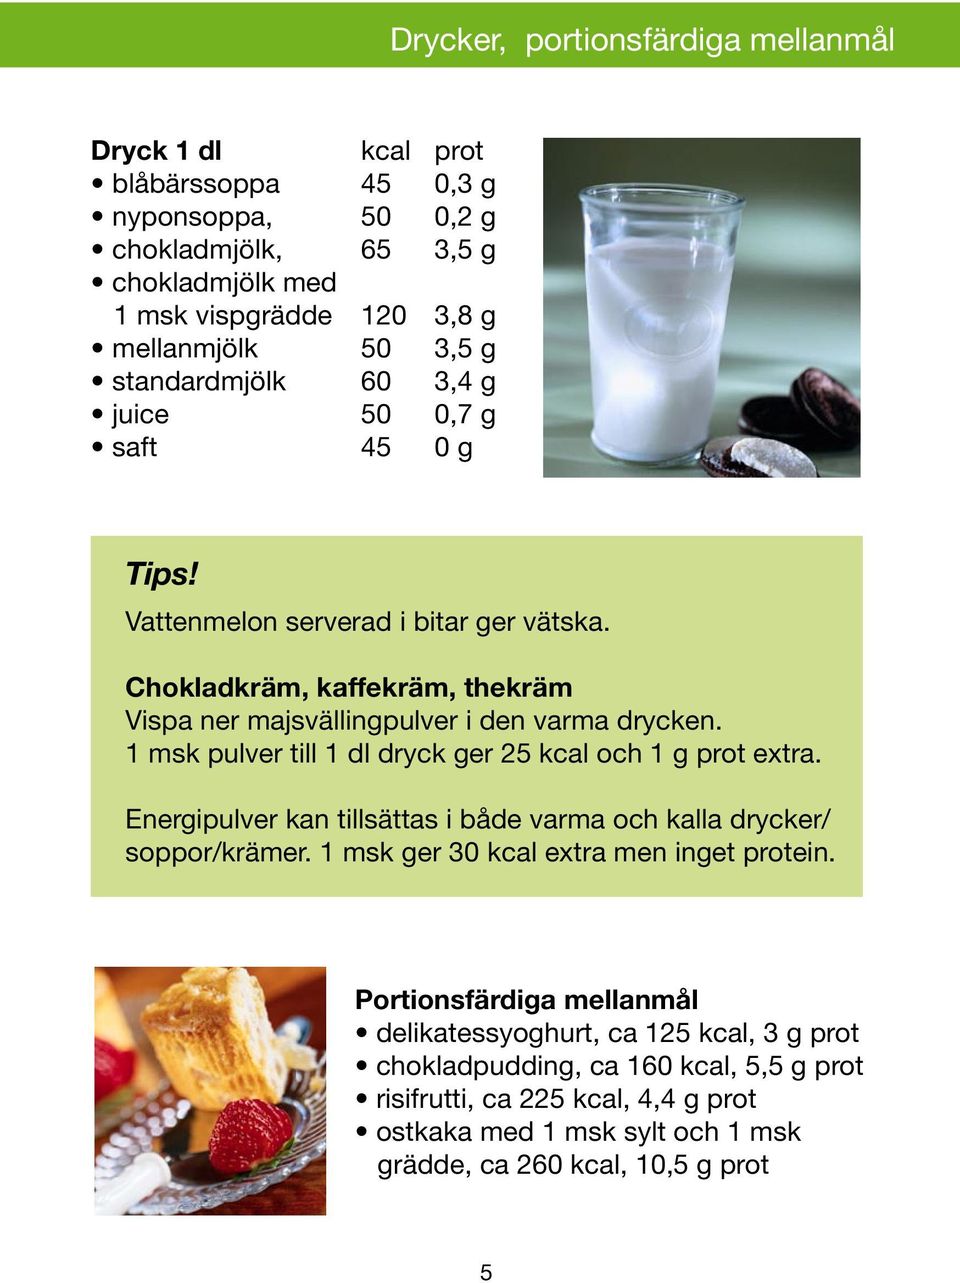 1 msk pulver till 1 dl dryck ger 25 kcal och 1 g prot extra. Energipulver kan tillsättas i både varma och kalla drycker/ soppor/krämer. 1 msk ger 30 kcal extra men inget protein.